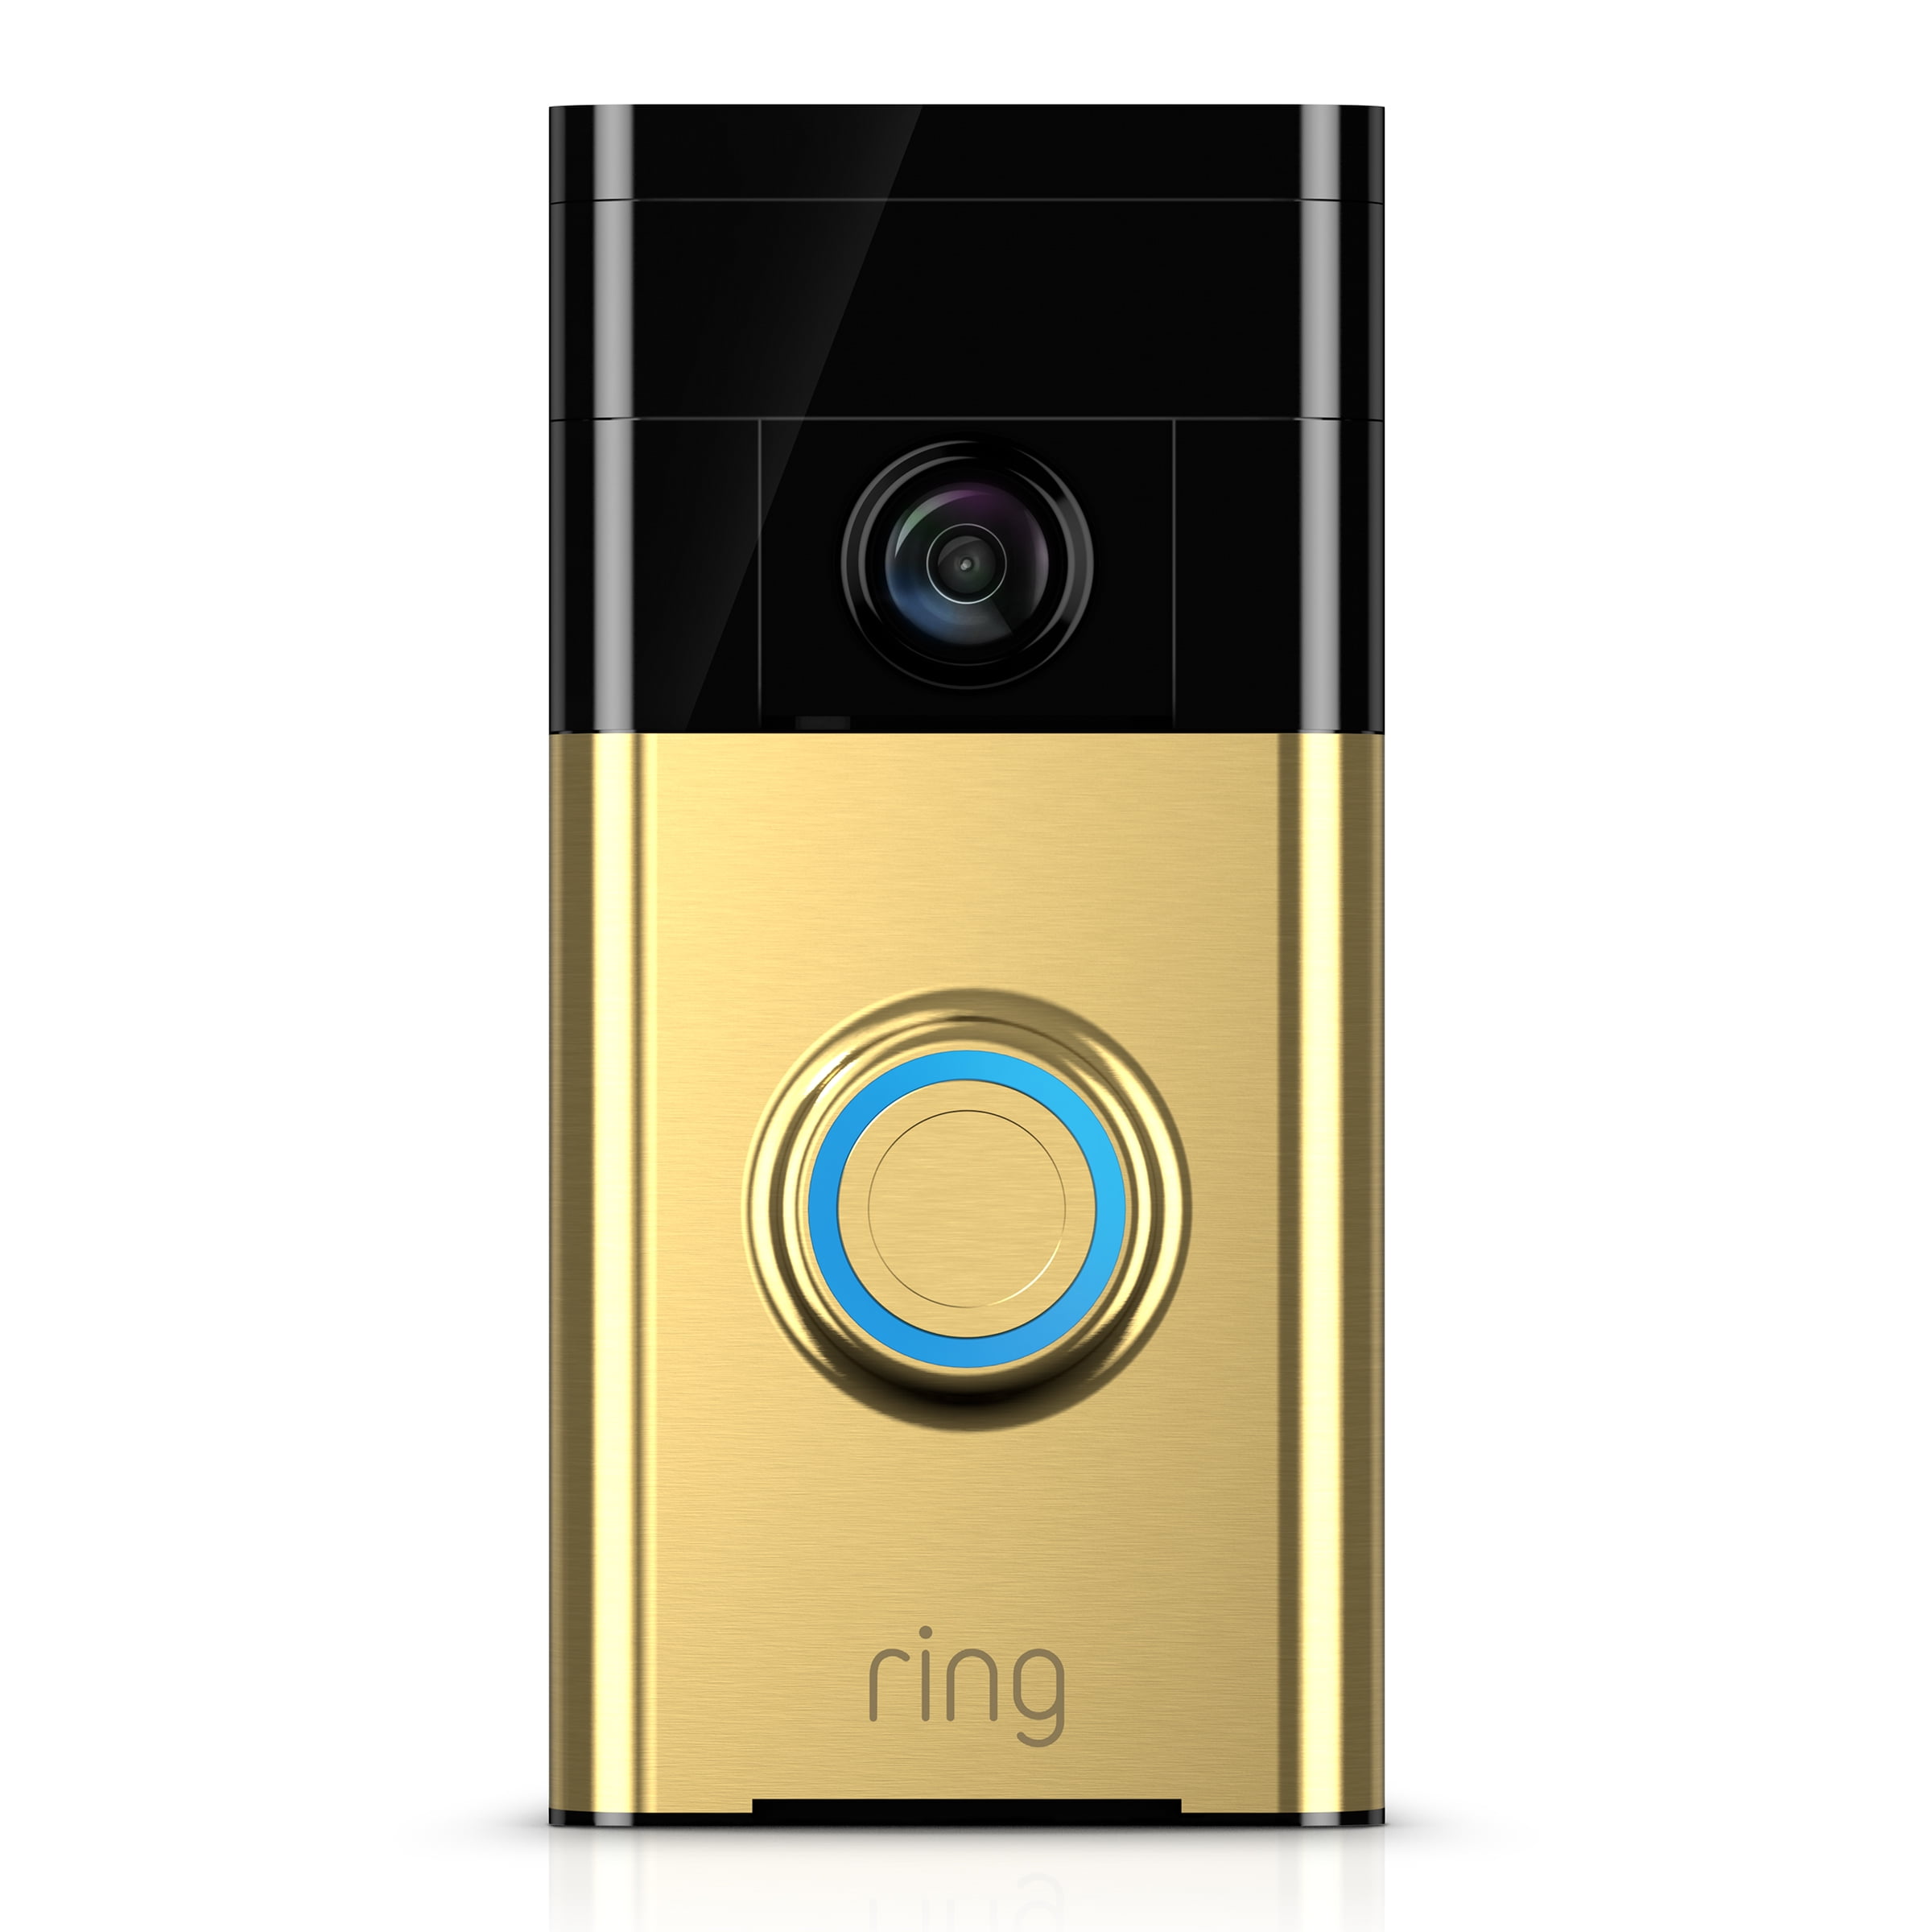 ring video doorbell at walmart